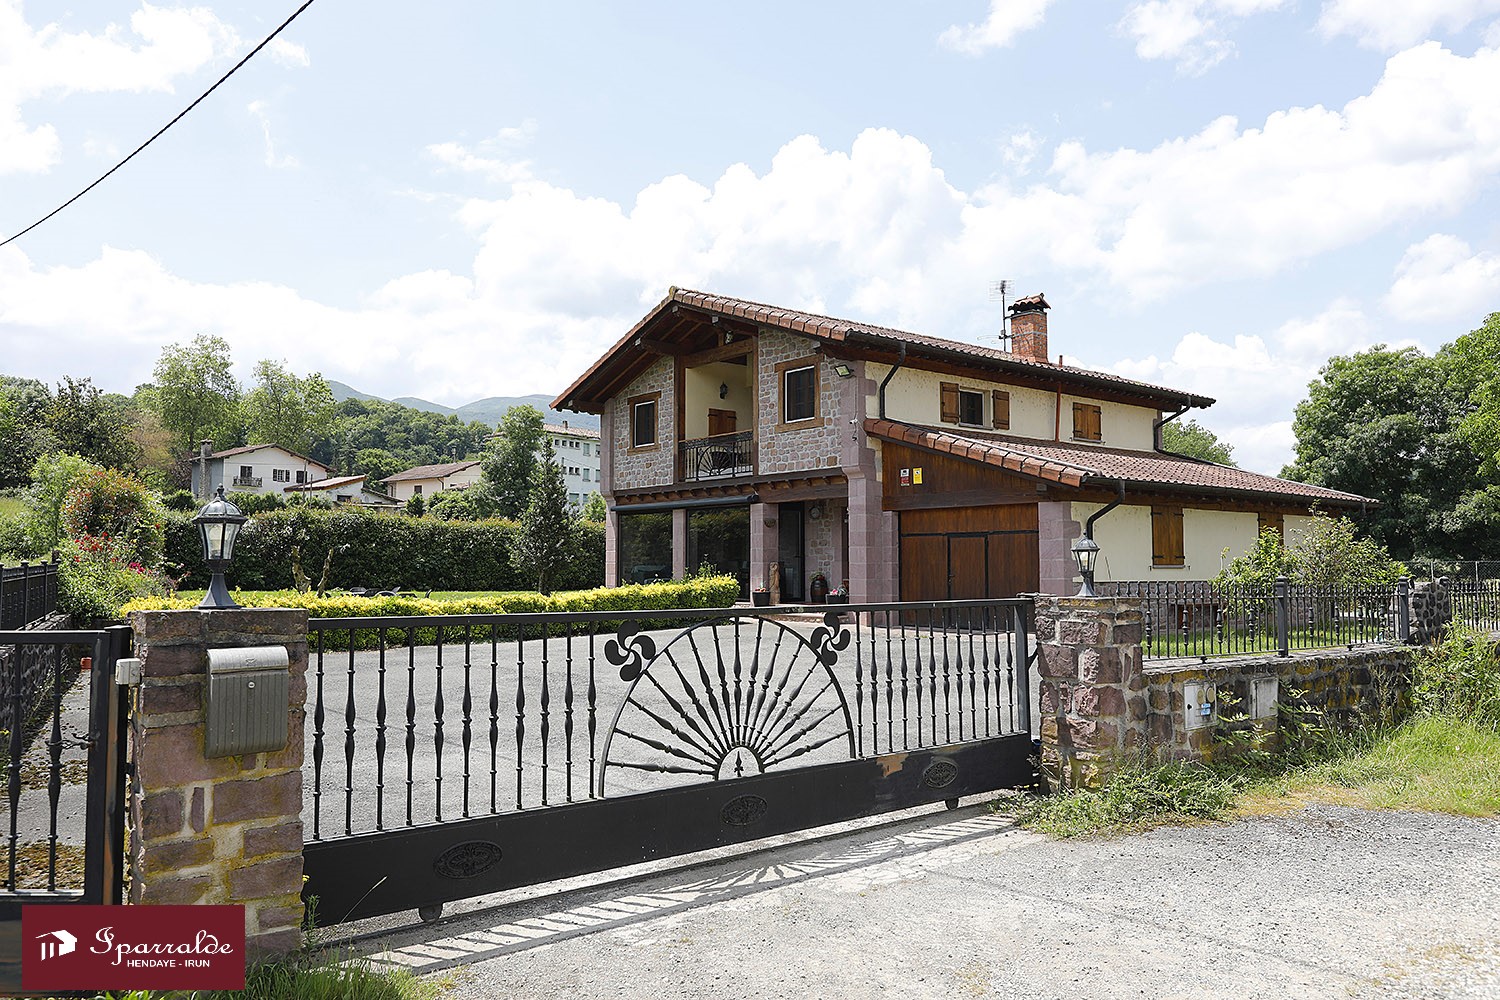 Magnifique Maison bifamiliale de style Basque à acheter, située à Biriatou, à 15 minutes des Plages (64)